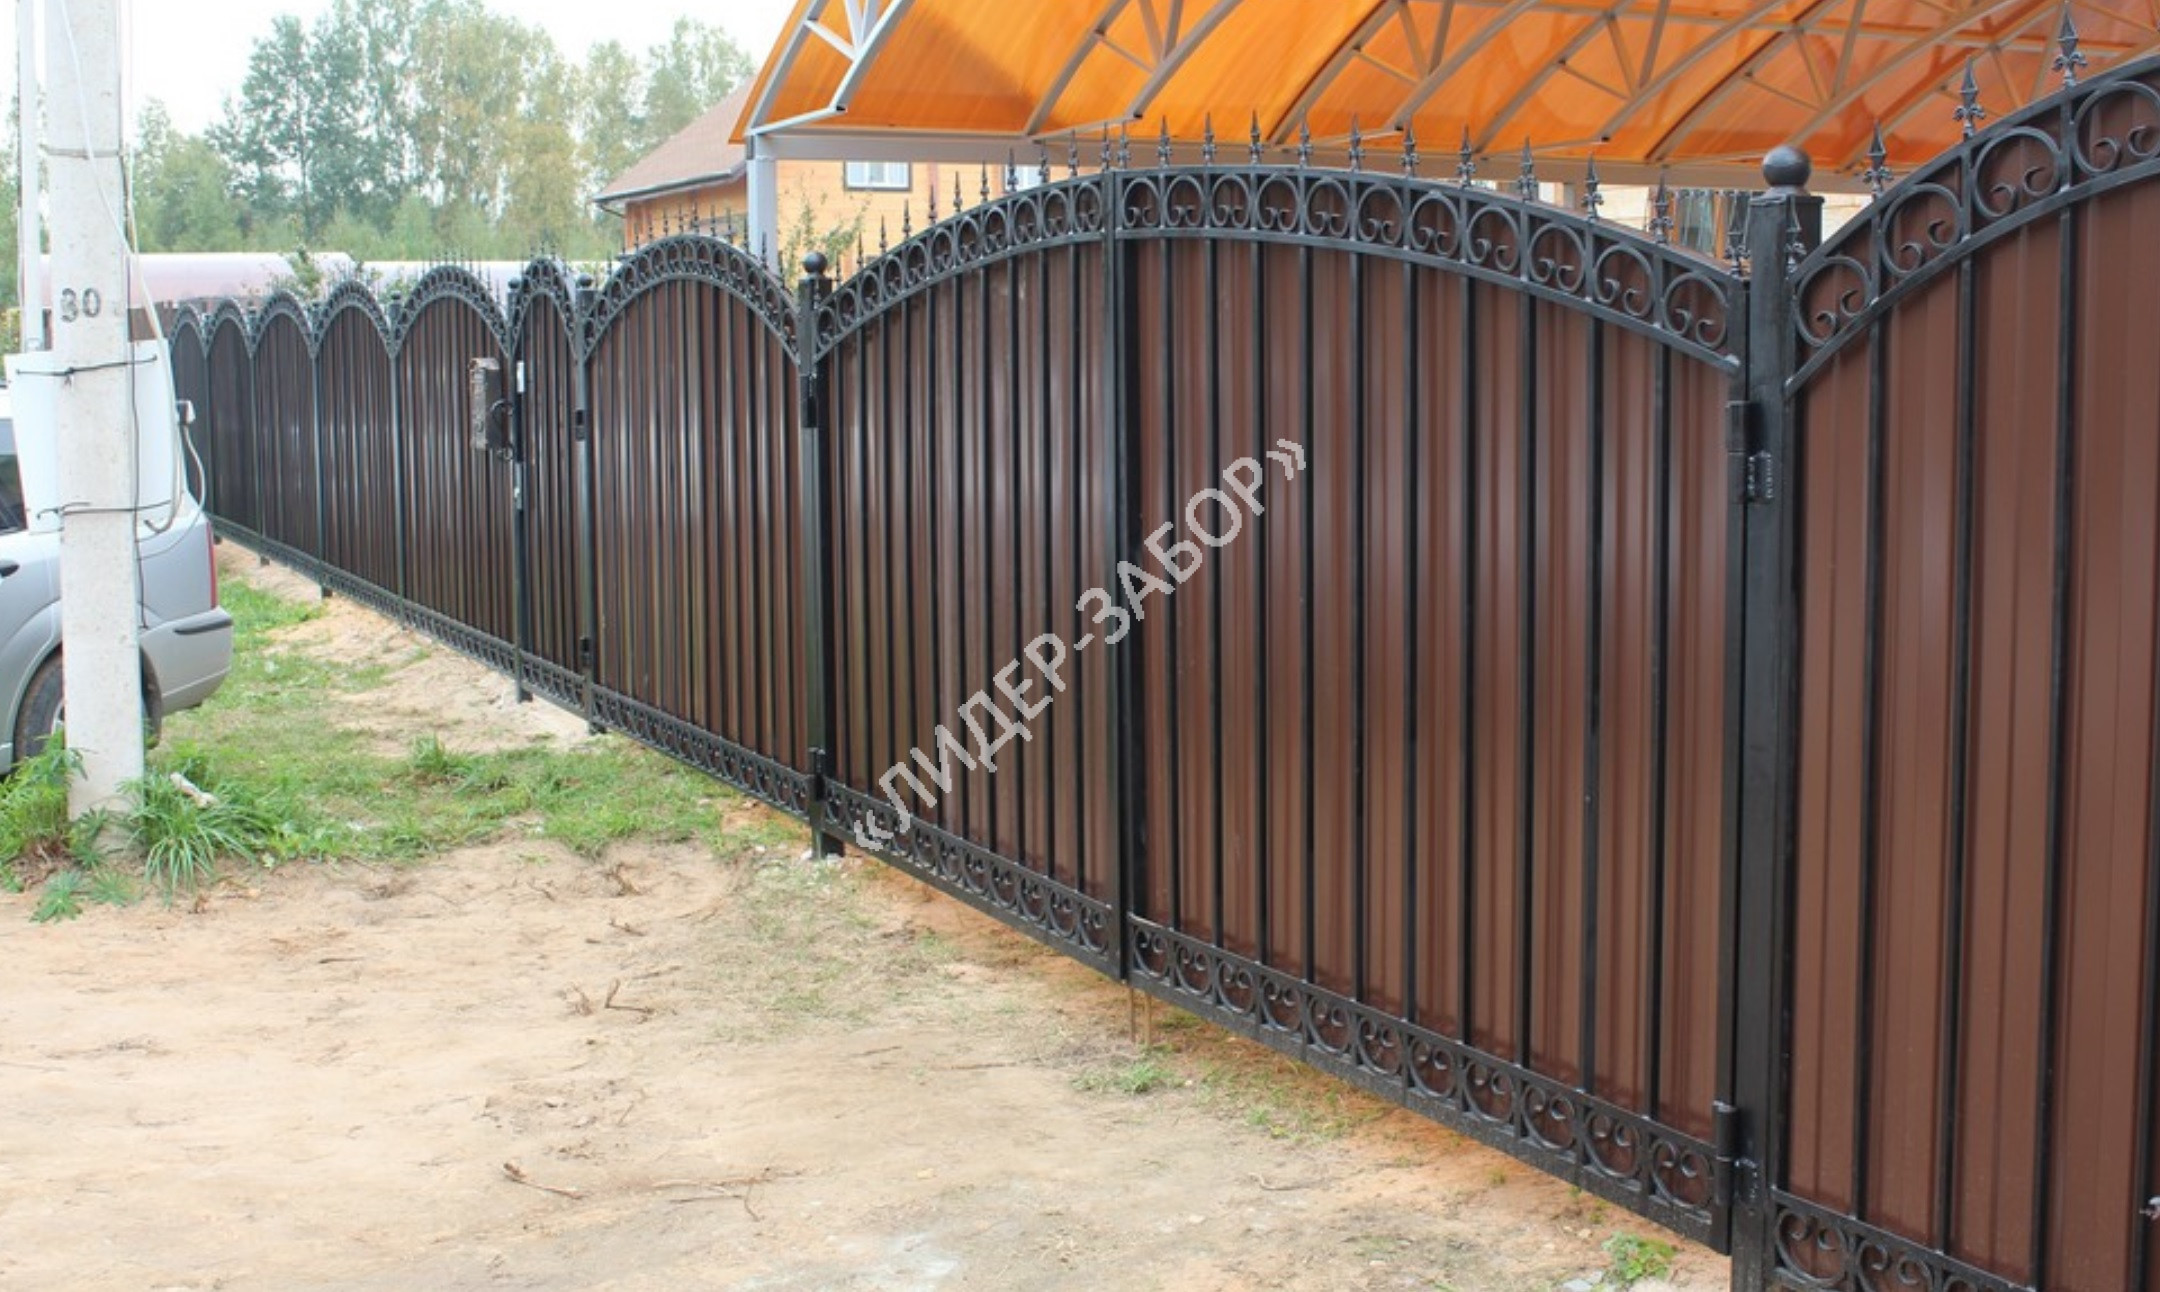 Купить Забор из двухстороннего профнастила на металлических опорах с кованными элементами